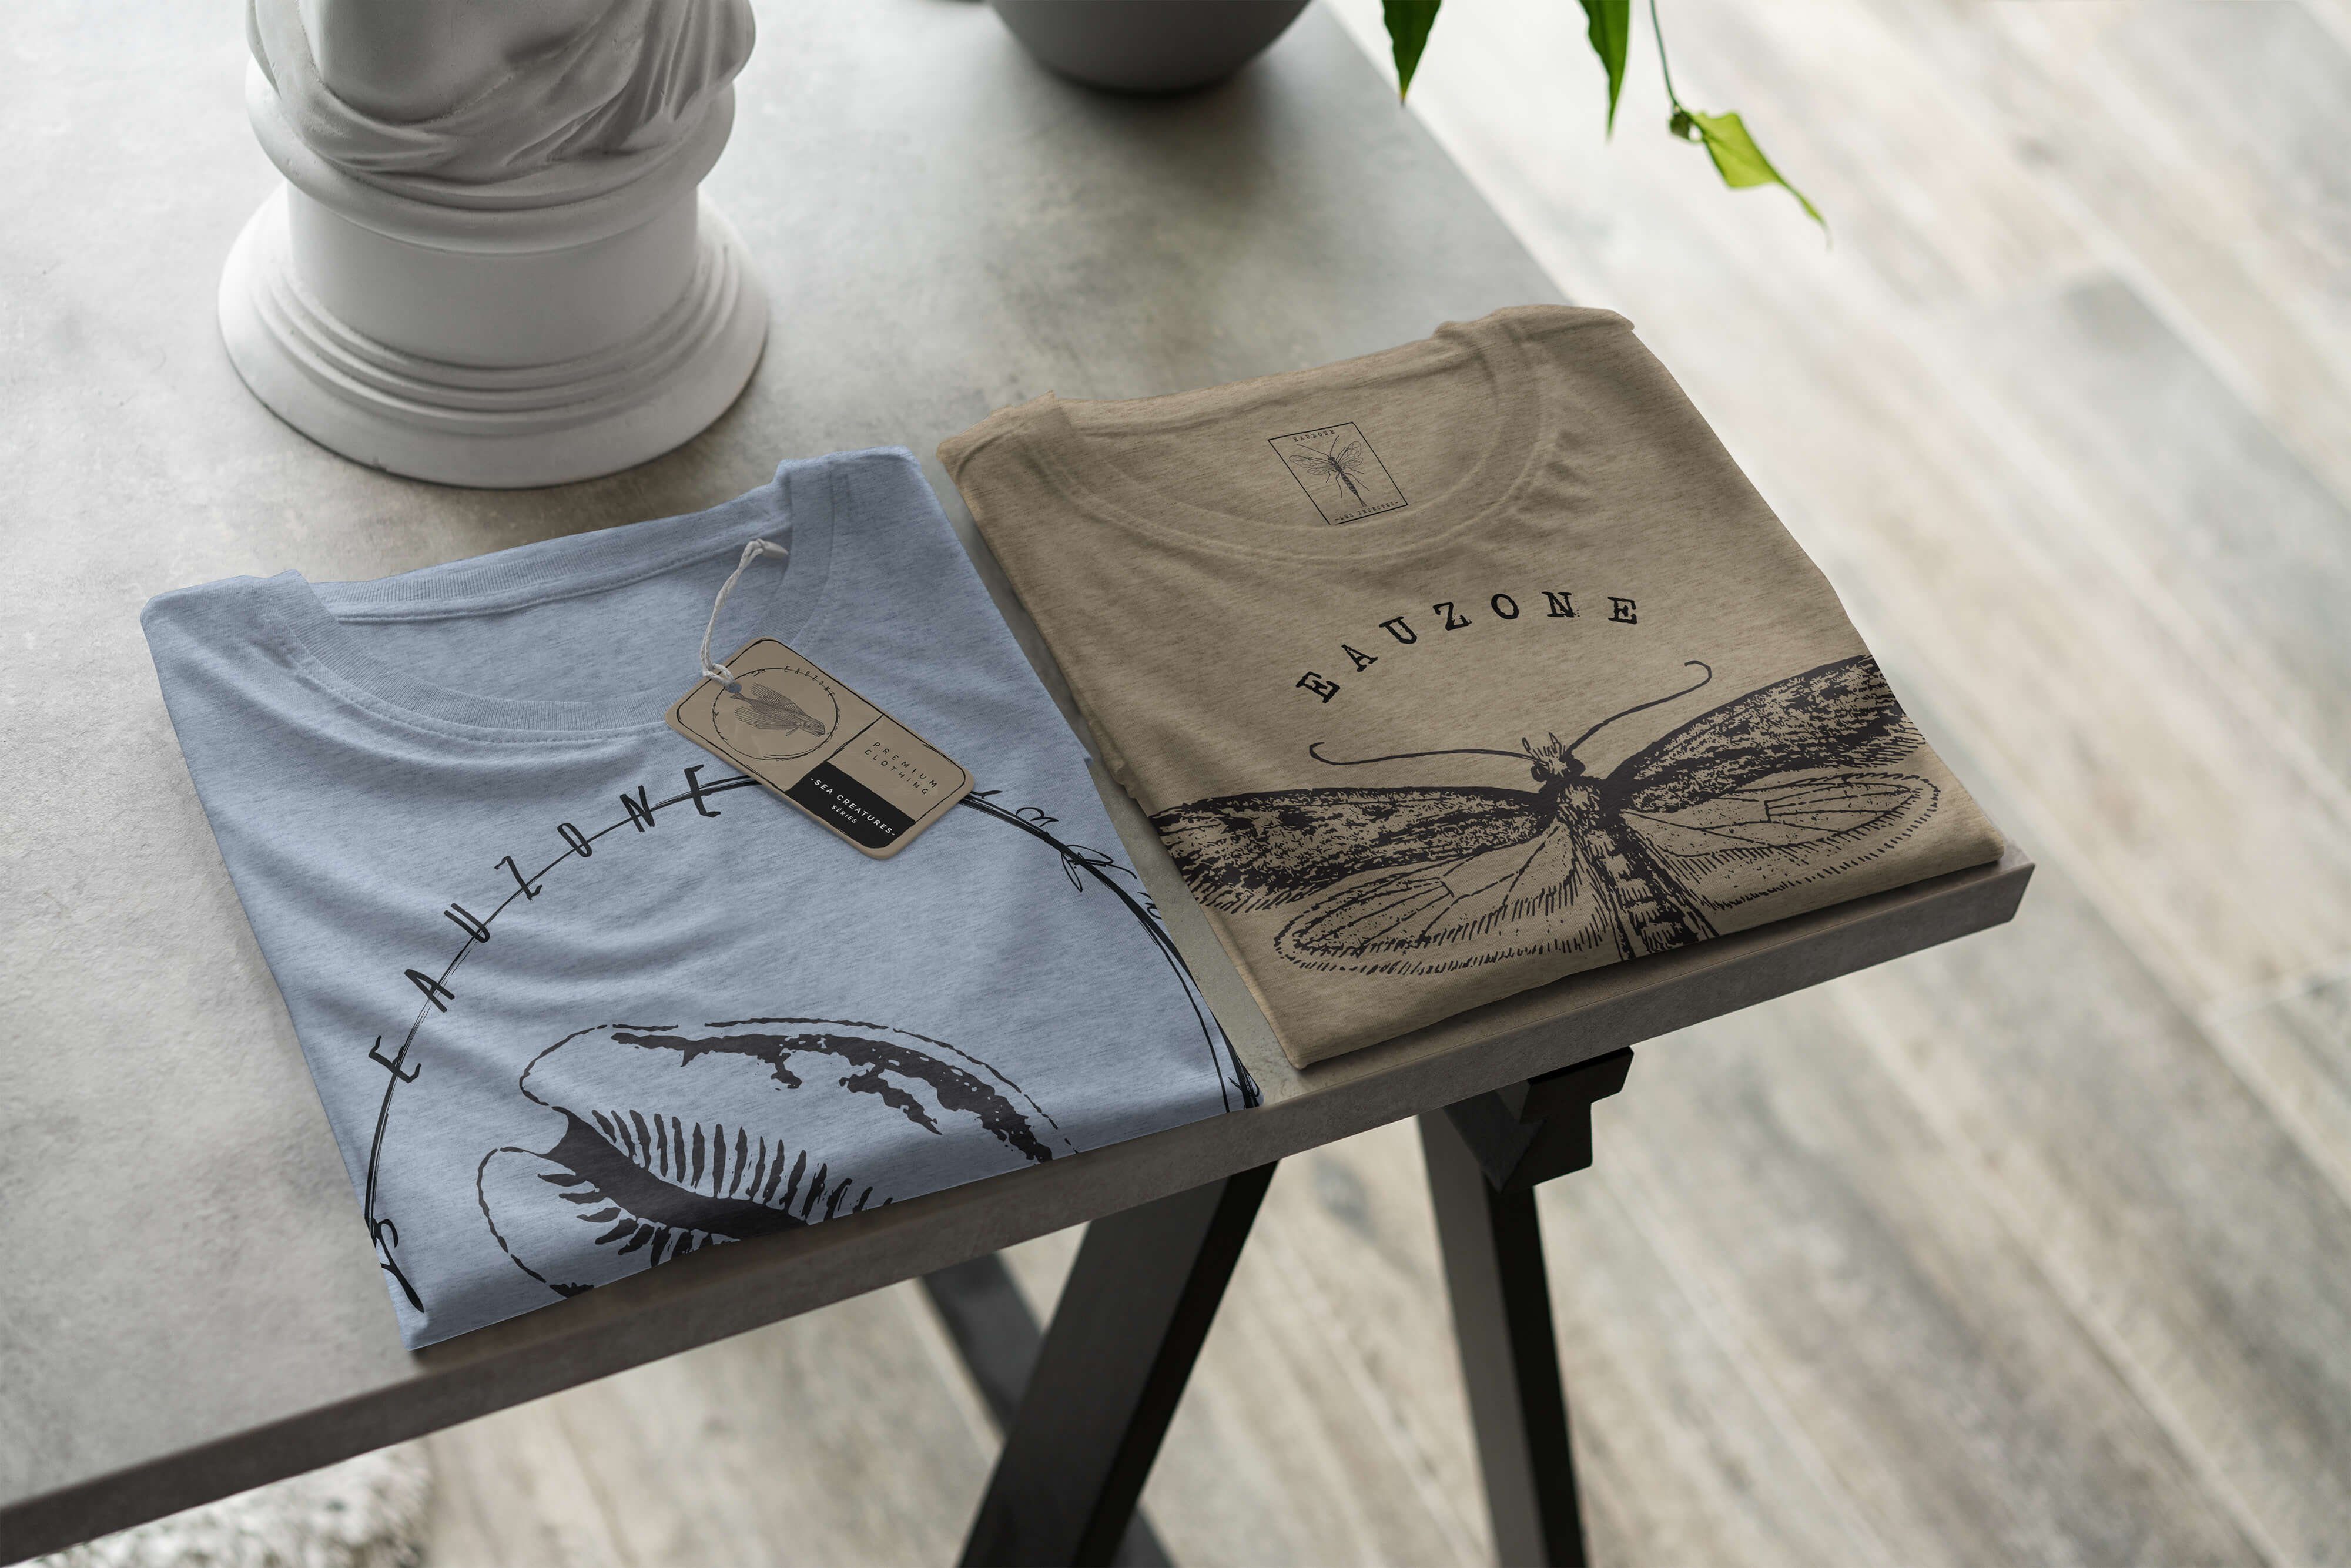 Sinus Art T-Shirt und - 008 Sea T-Shirt Tiefsee sportlicher Struktur feine Fische Stonewash / Sea Creatures, Serie: Denim Schnitt